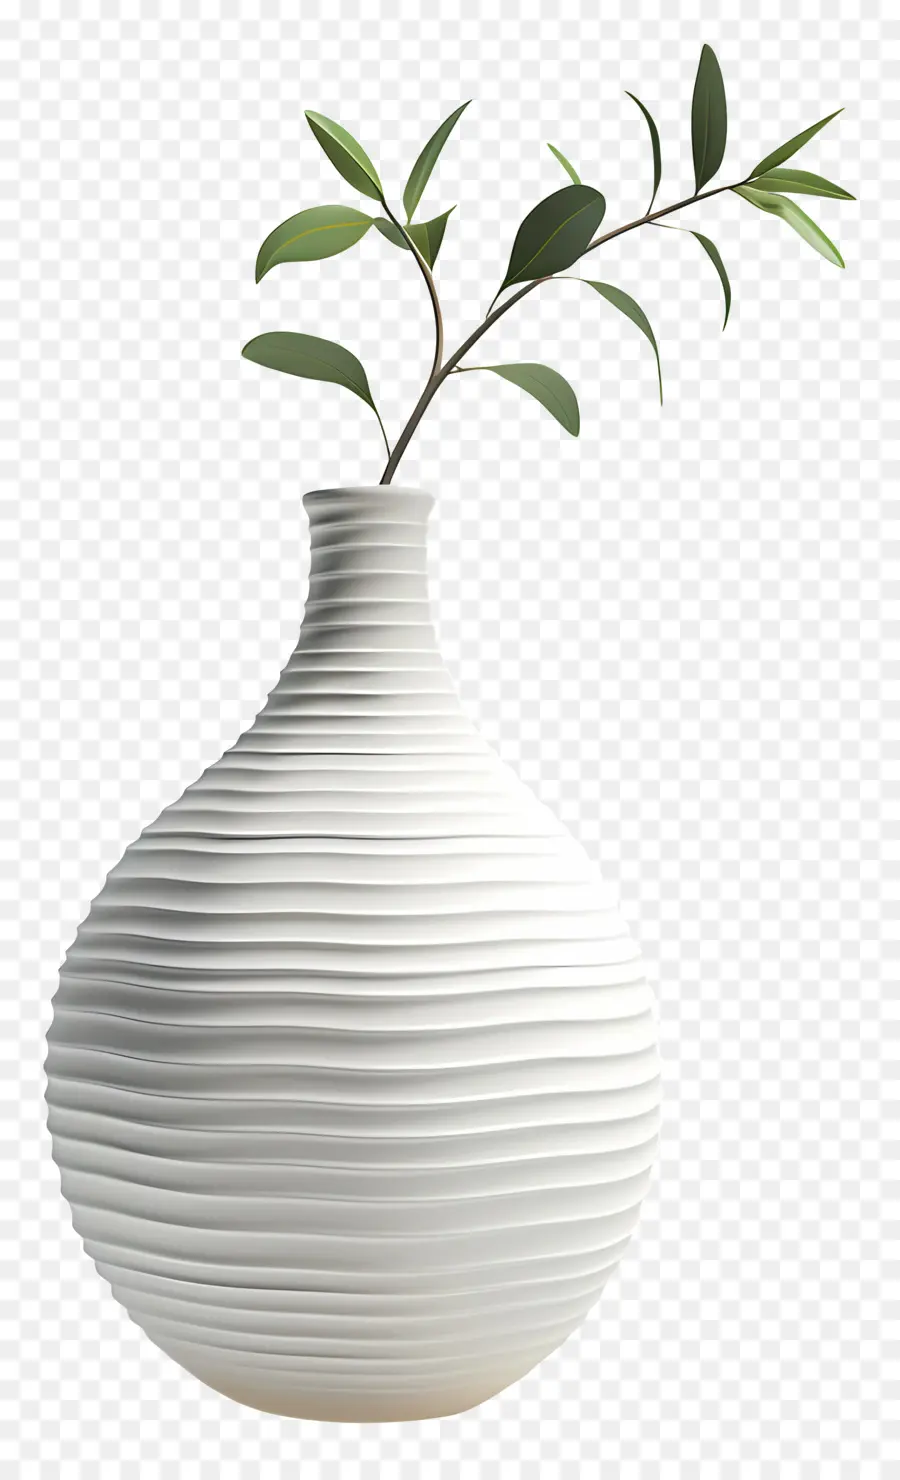 grüner Baum - Weiße Keramikvase mit Wirbelmuster, grüner Baum